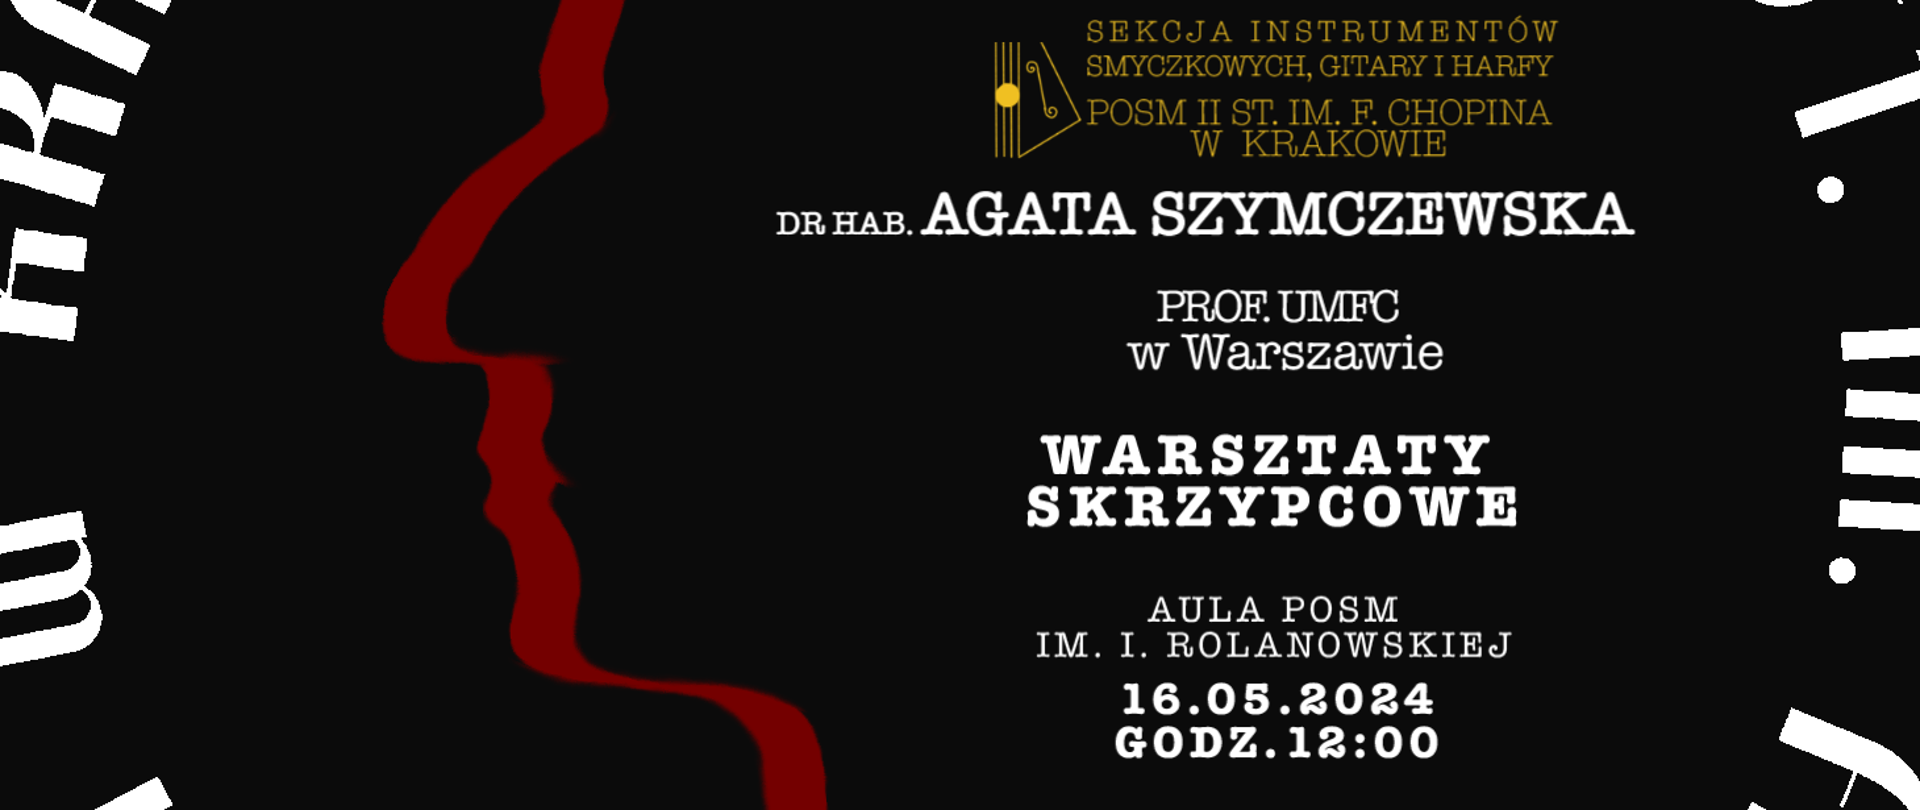 Plakat, kolor tła czarny, w tle powiększony logotyp szkoły; tekst: DR HAB AGATA SZYMCZEWSKA, prof. UMFC w Warszawie, Warsztaty skrzypcowe, 16.05.2024, godz. 12:00